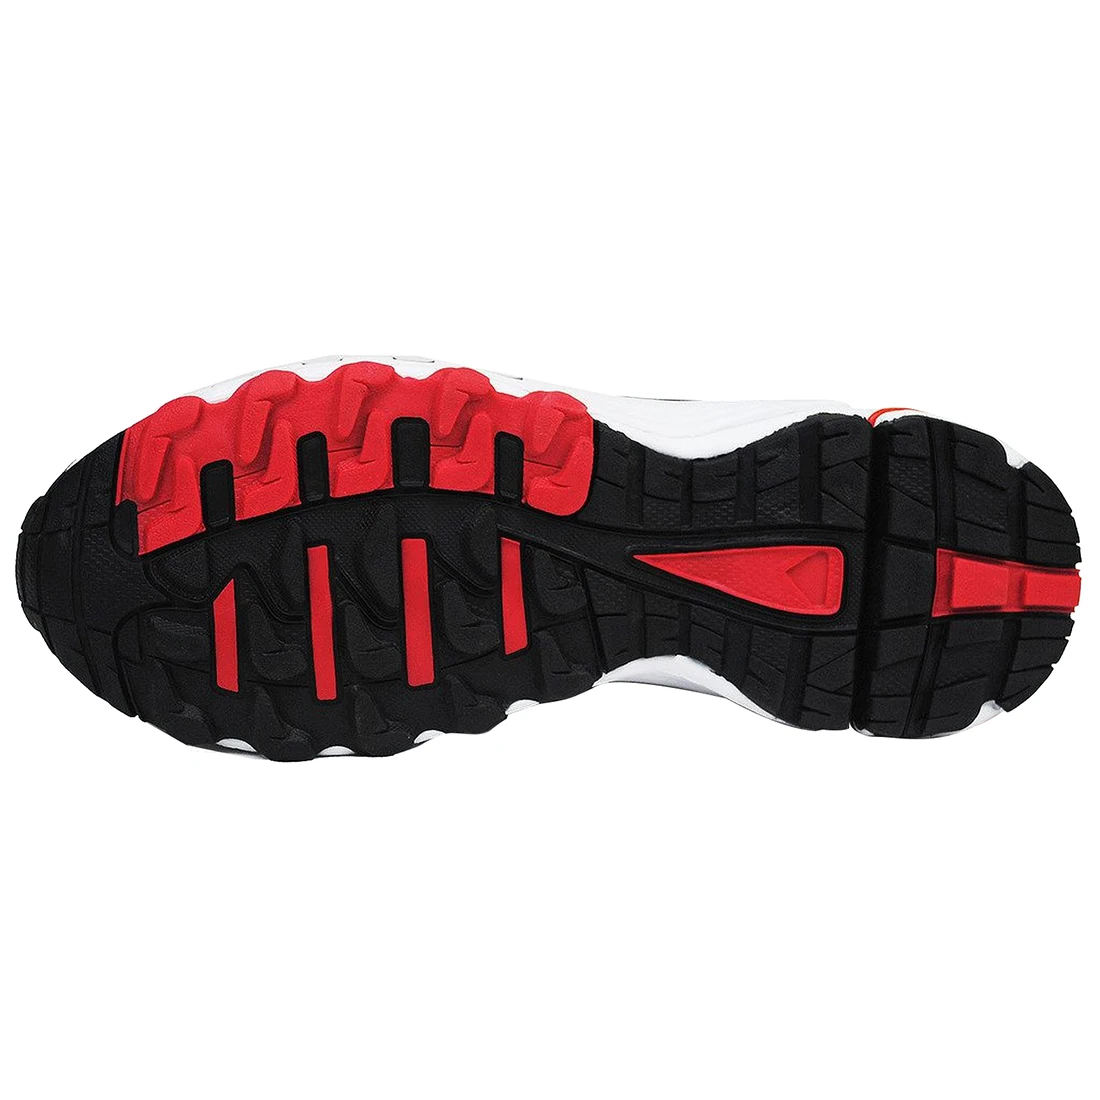 LGFM-DELOCRD спортивная обувь для взрослых, черная и красная(FR 39 = Asia 40